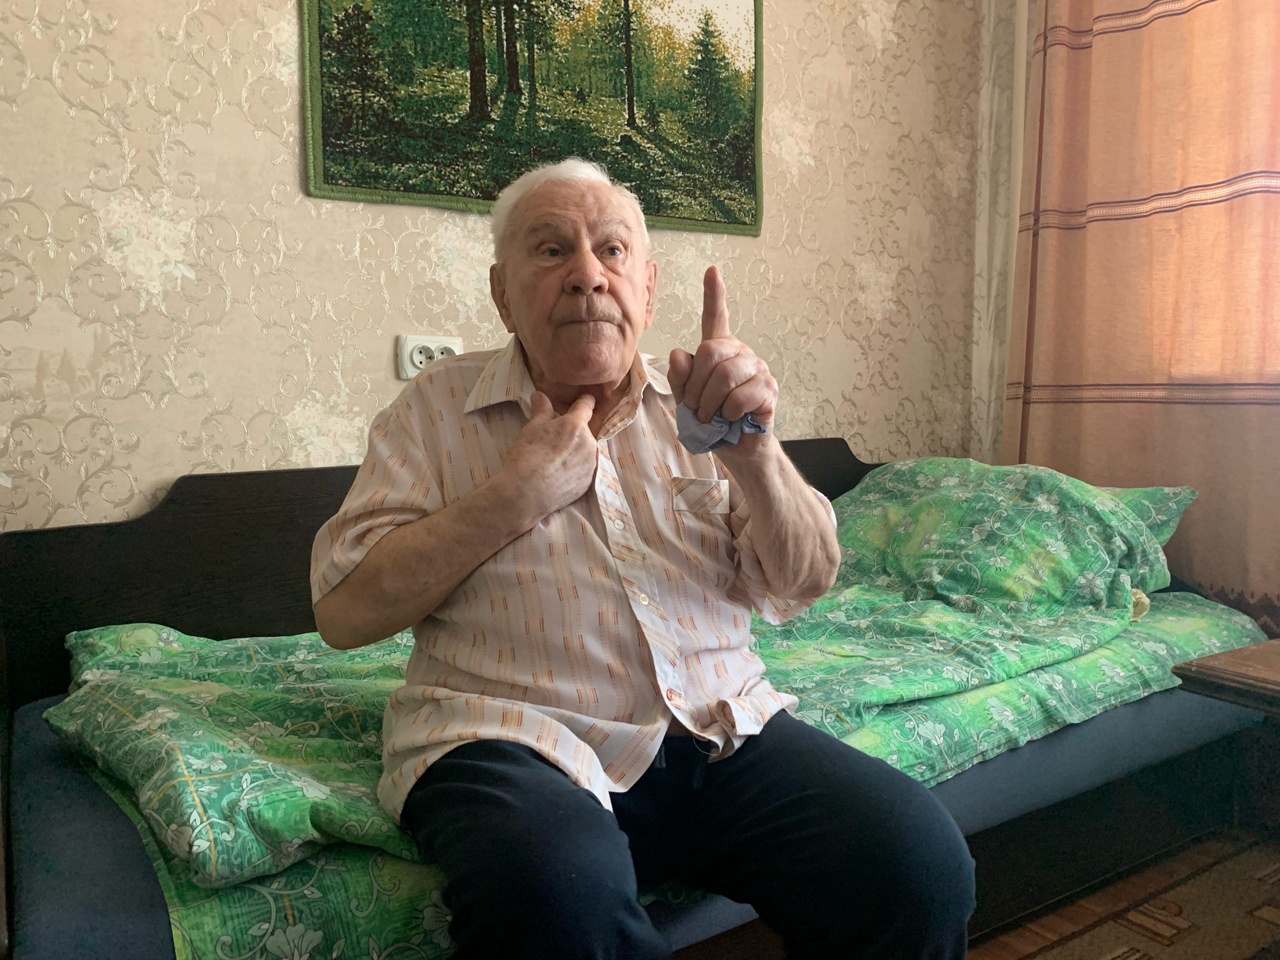 "Это Победа": 99-летний ветеран войны из Ярославля воссоединился с любимой спустя 40 лет